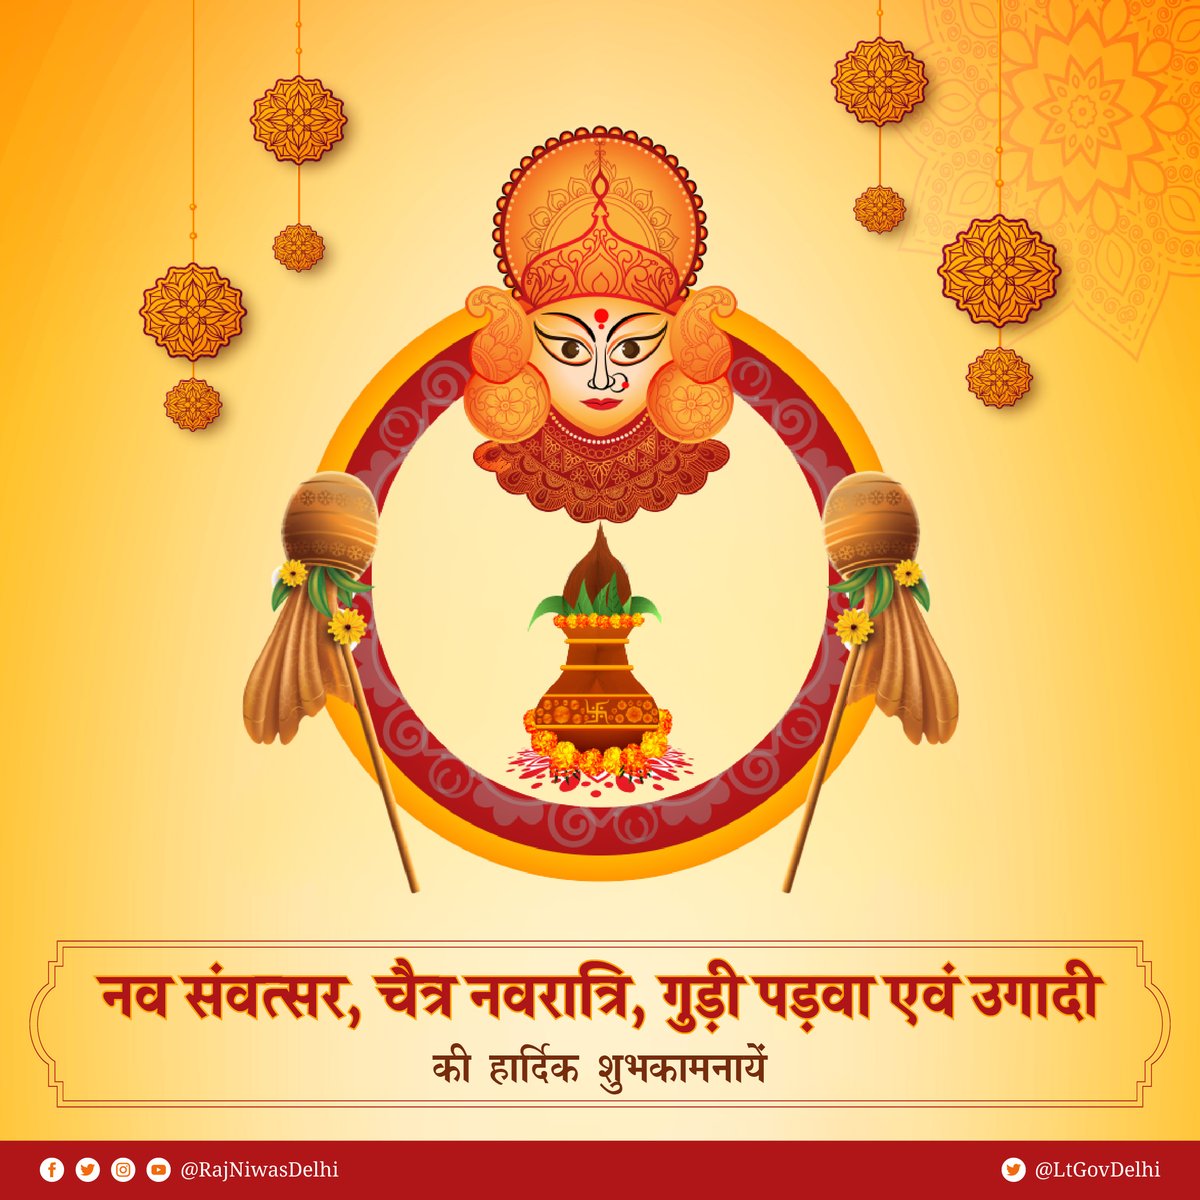 नव संवत्सर, चैत्र नवरात्रि, गुड़ी पड़वा एवं उगादी की हार्दिक शुभकामनाएं। सब के जीवन में सुख, स्वास्थ्य, समृद्धि तथा शांति का संचार हो।